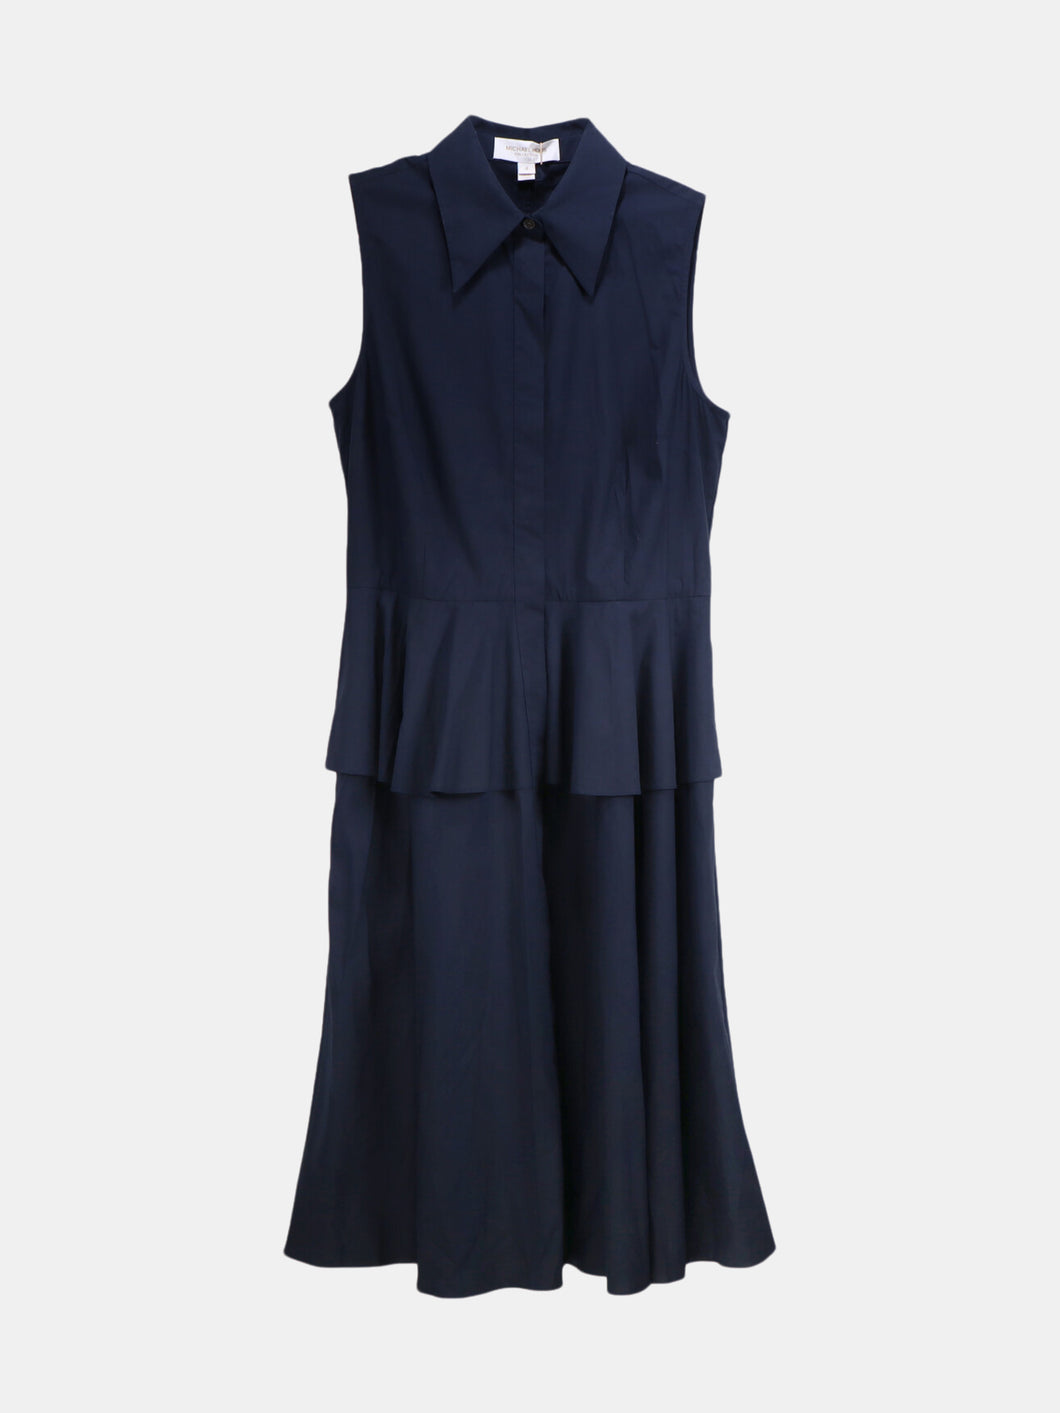 Michael Kors Women's Midnight Sleeveless Cotton Button Up Dress